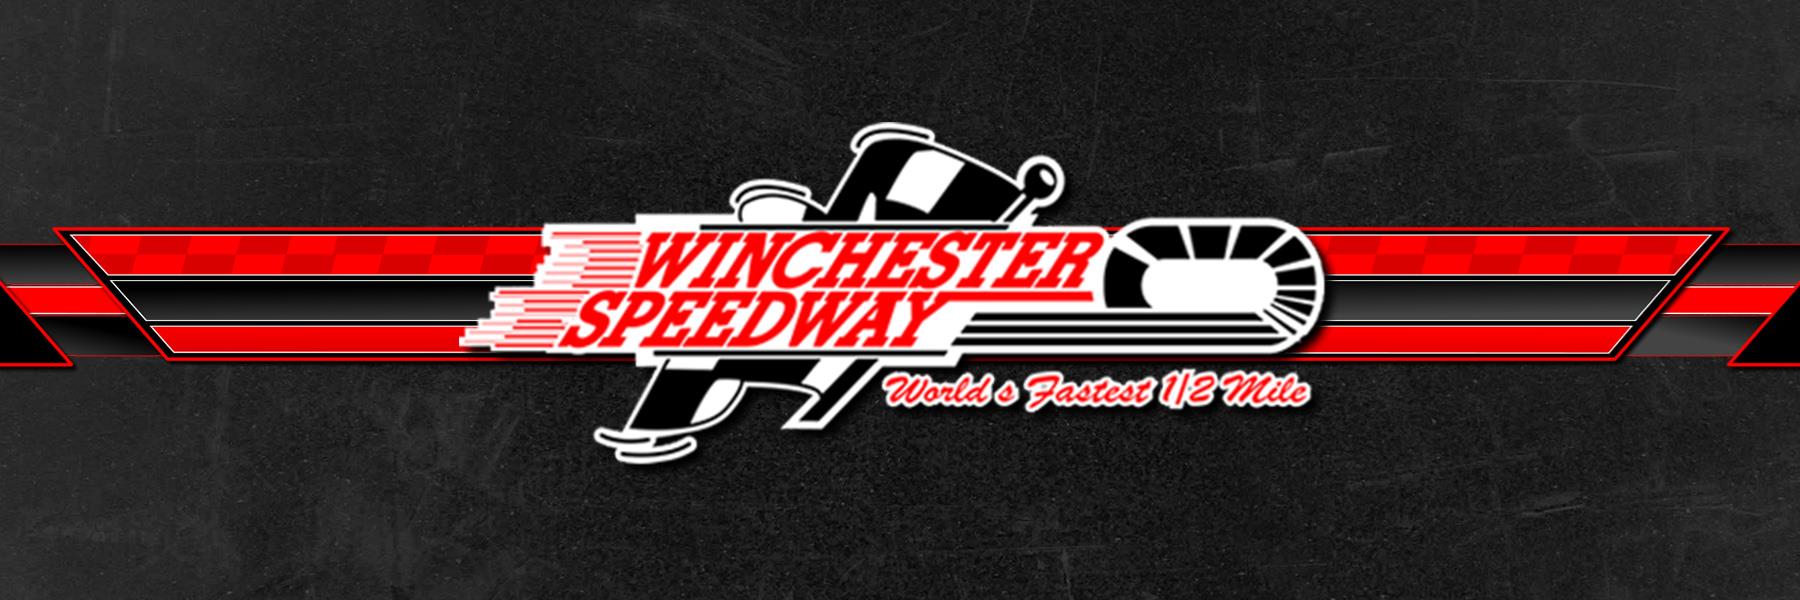 9/6/2020 - Winchester Speedway